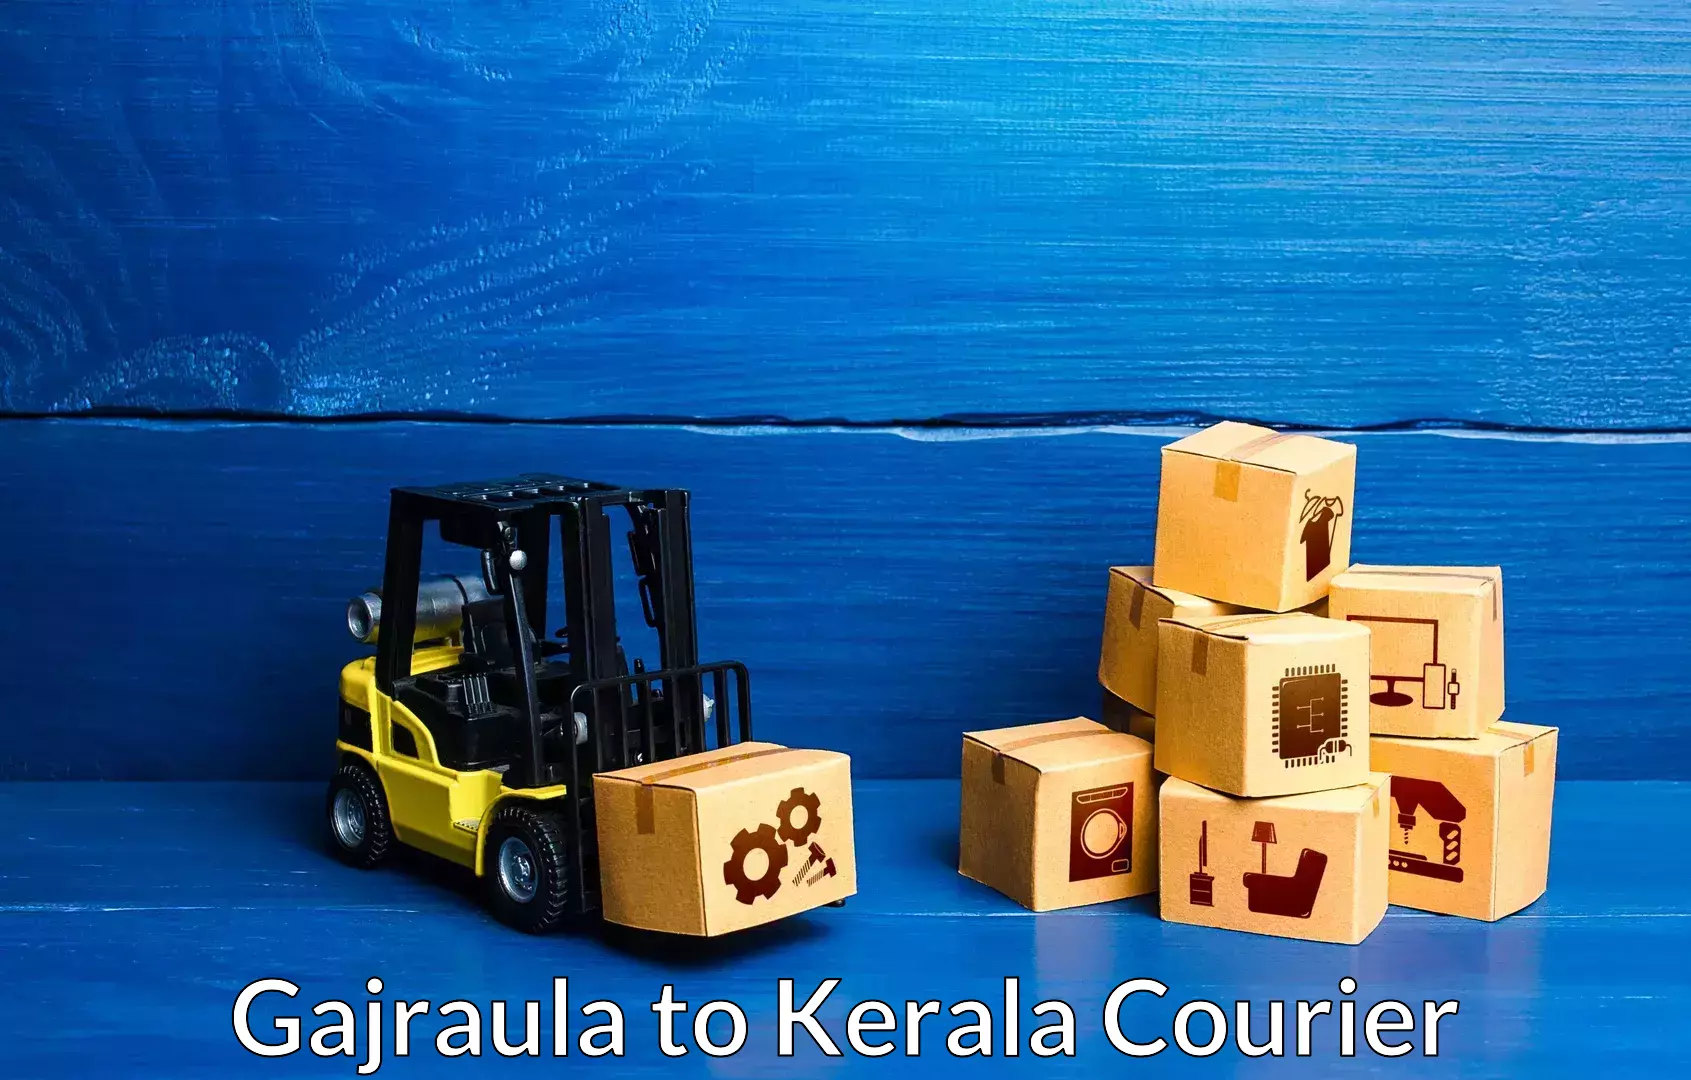 Professional movers and packers Gajraula to Thiruvananthapuram